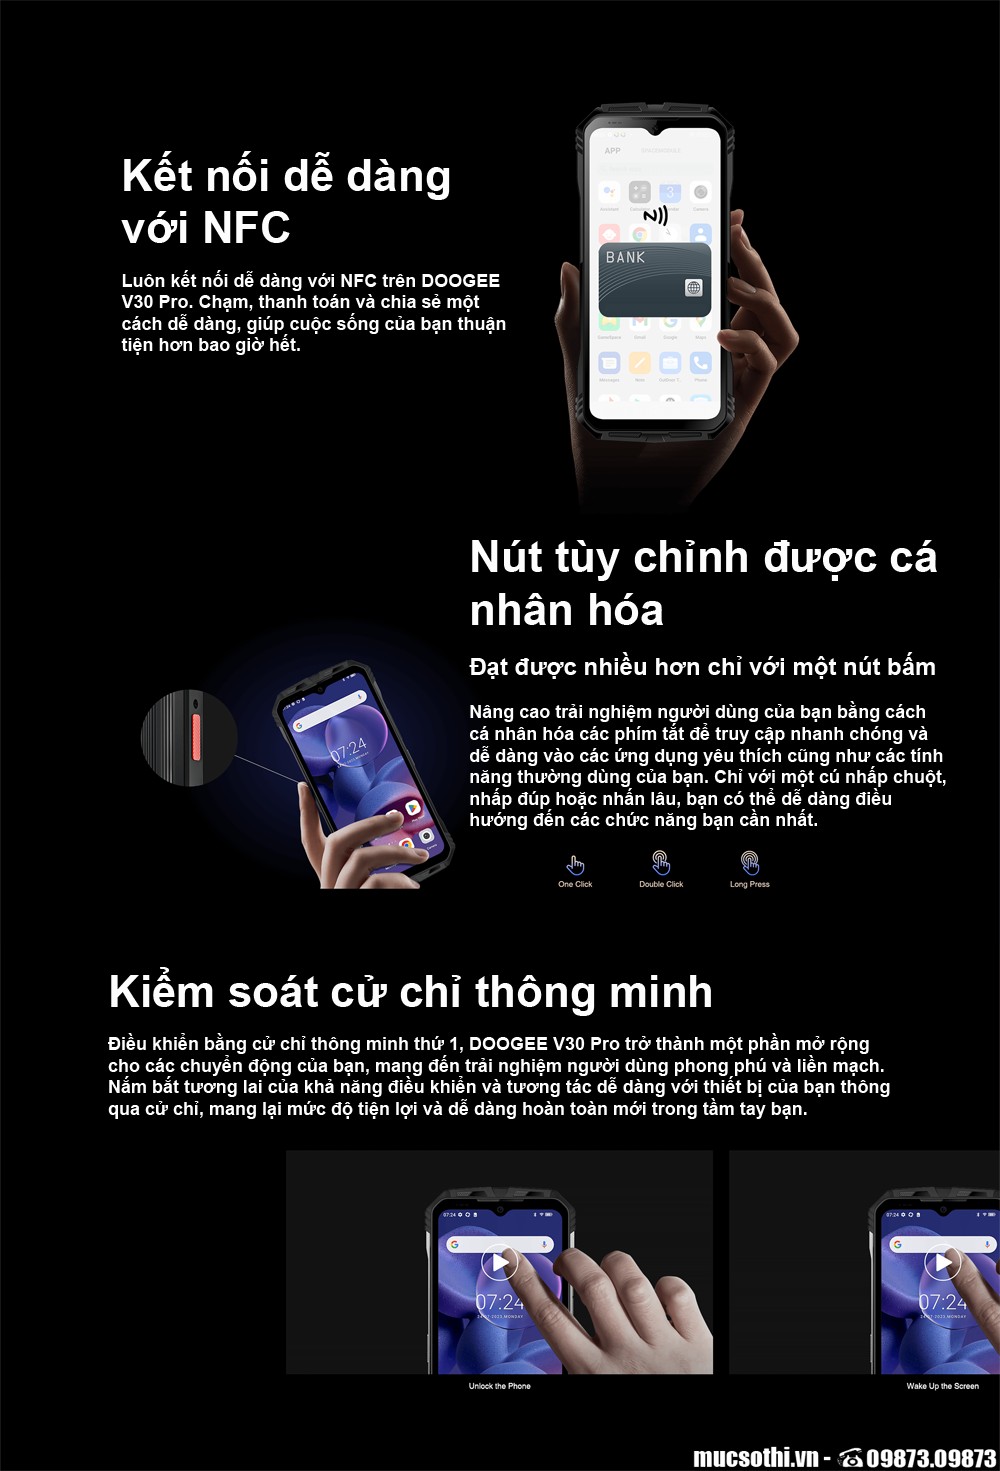 SmartphoneStore.vn - Bán lẻ giá sỉ online giá tốt điện thoại Doogee V30 Pro chính hãng - 09175.09195